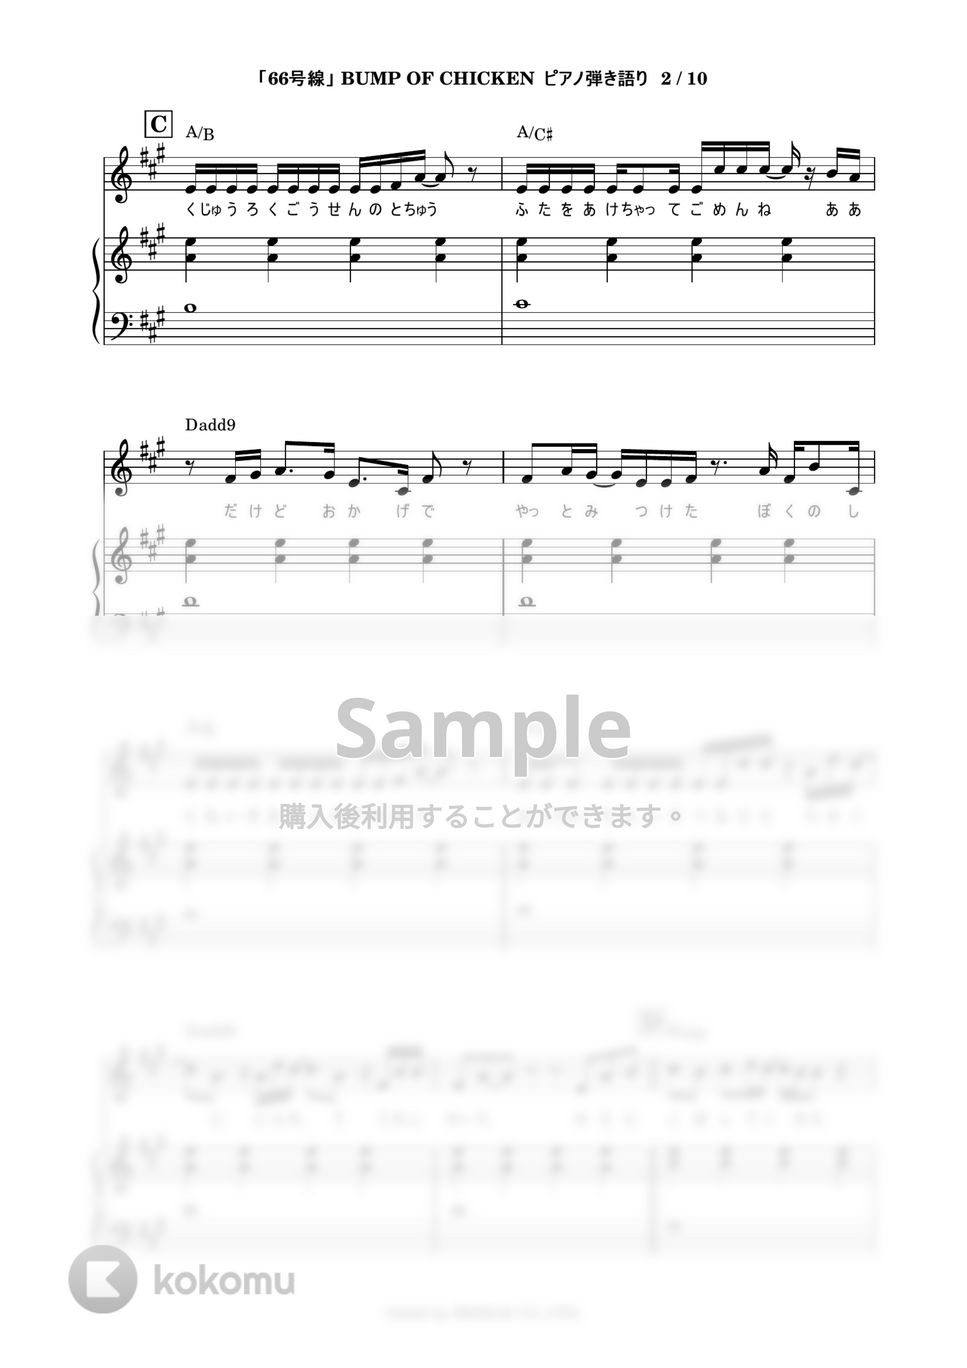 BUMP OF CHICKEN - 66号線 (ピアノ弾き語り) by 鈴木建作